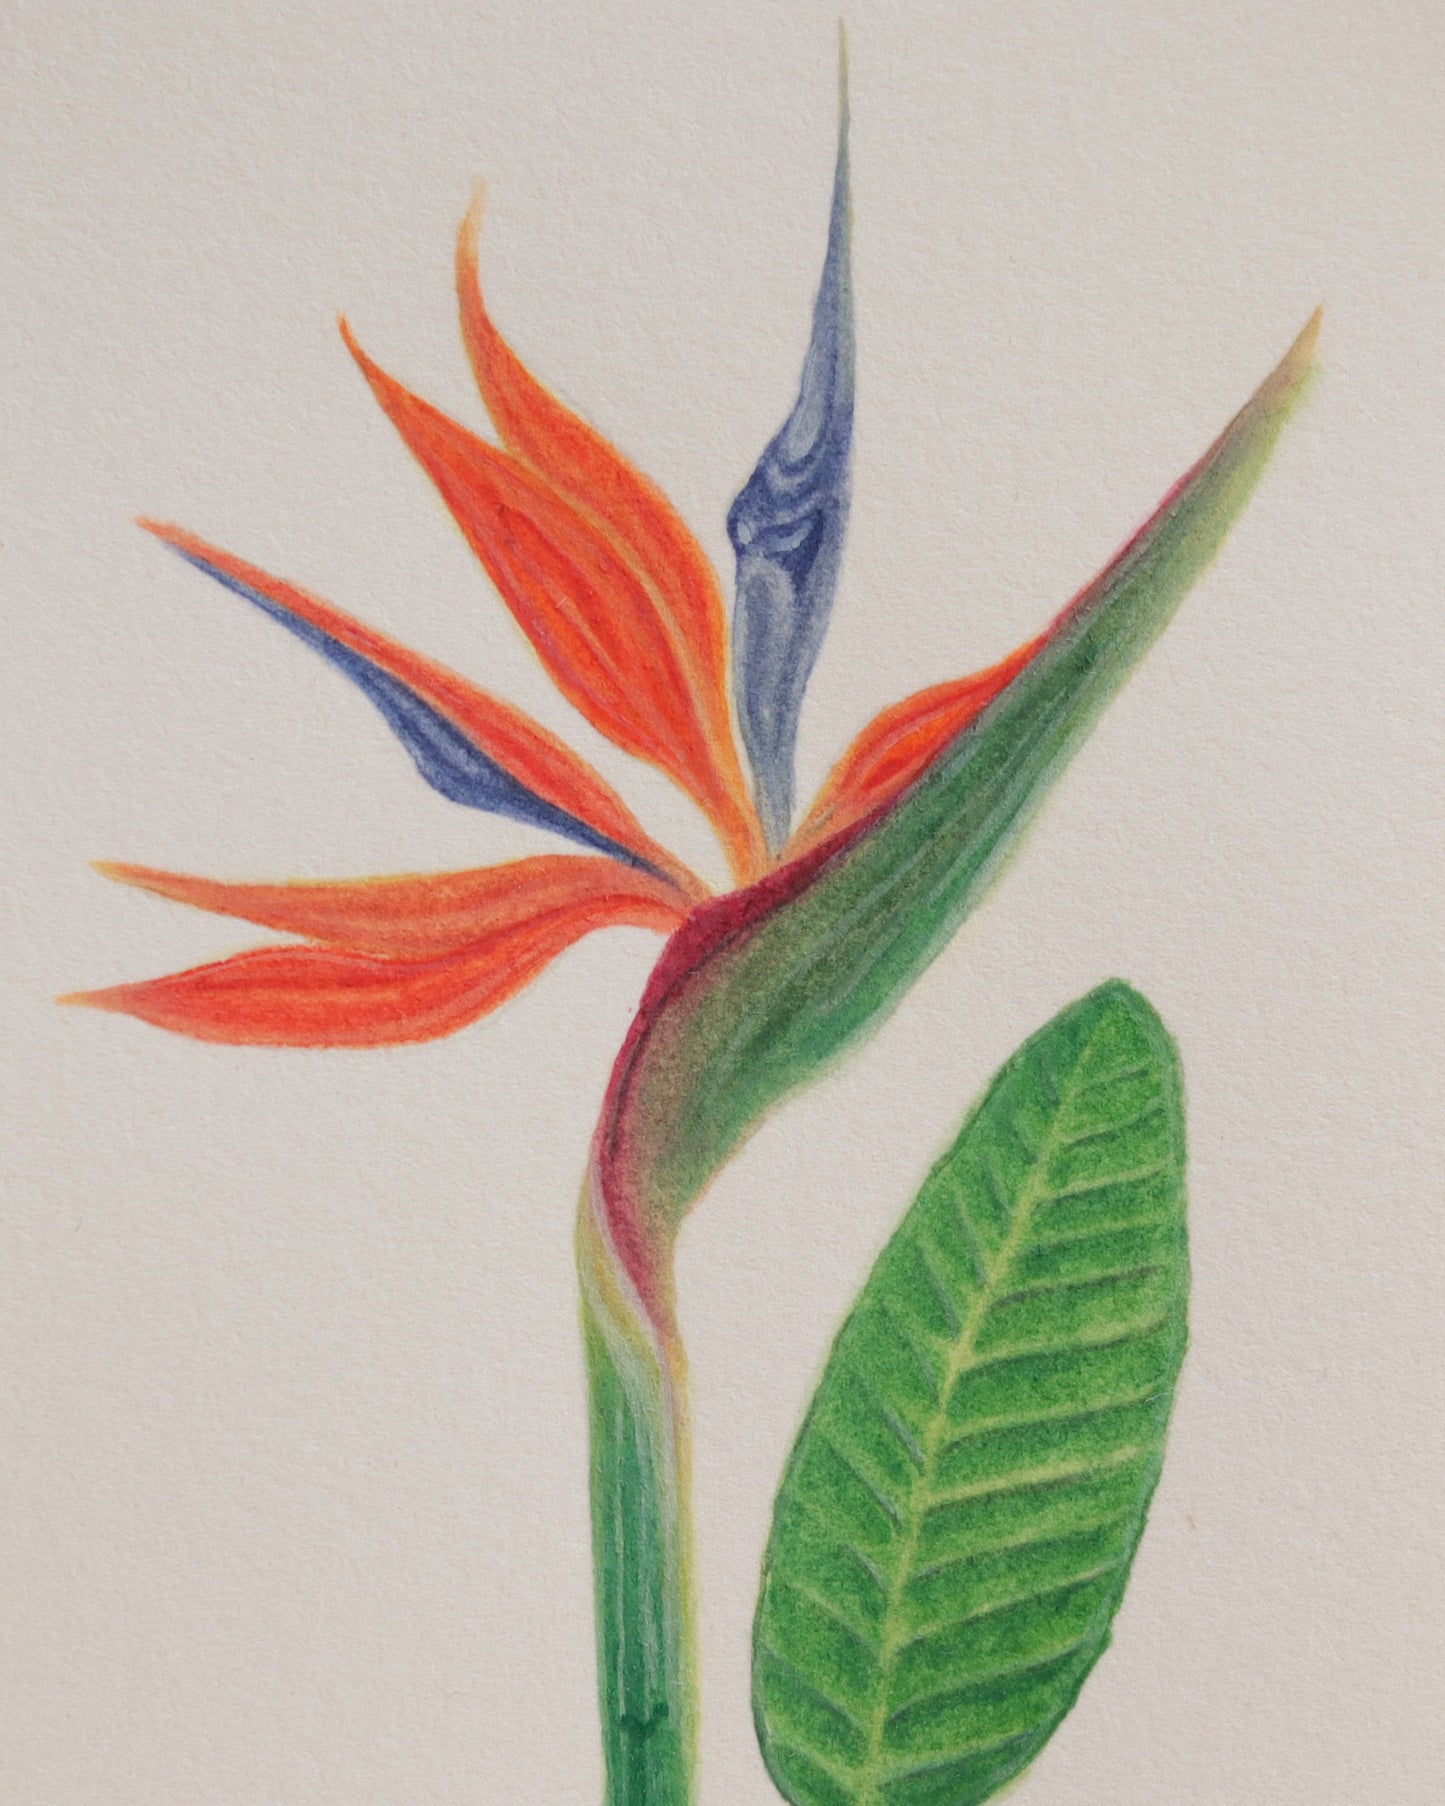 Birds of Paradise flower - Original botanical illustration